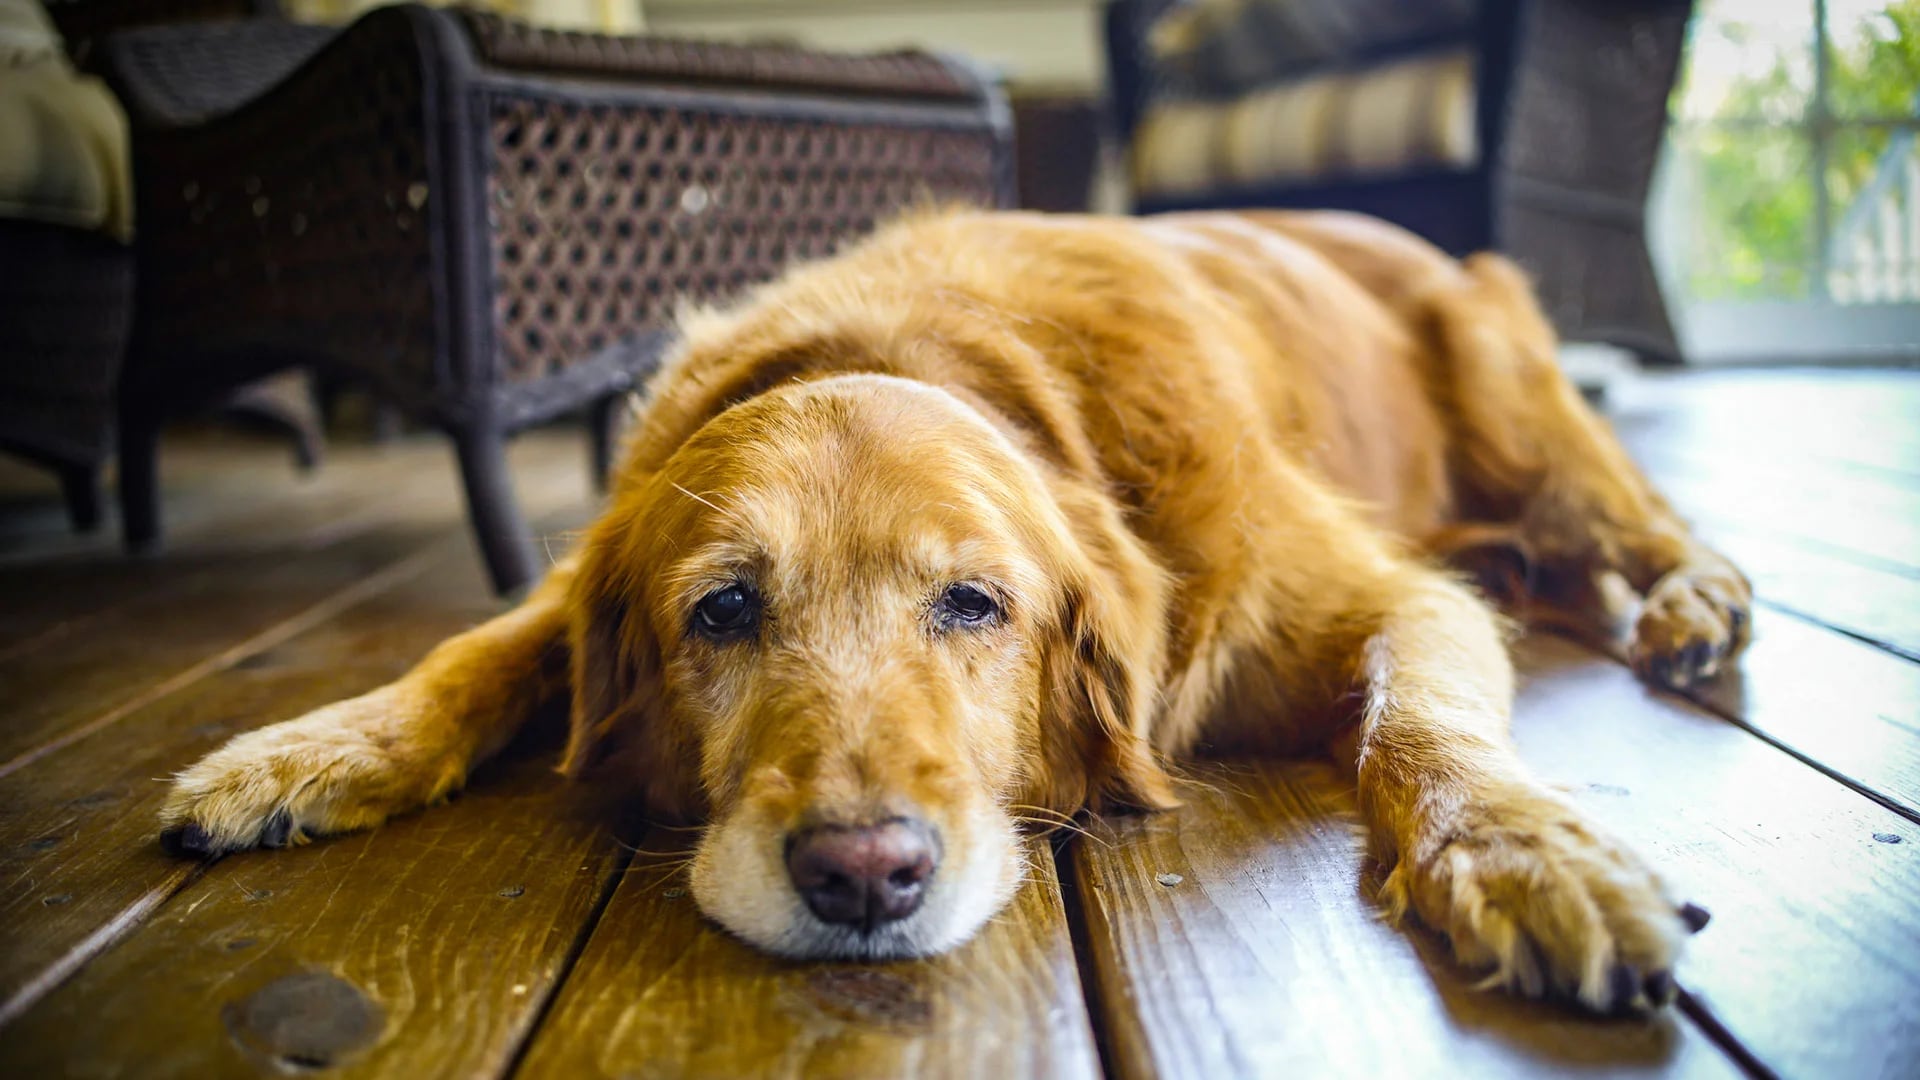 Los perros pueden llegar a sufrir de “ansiedad por separación” o bien depresión, cuando sus amos se alejan del hogar por un largo tiempo (iStock)